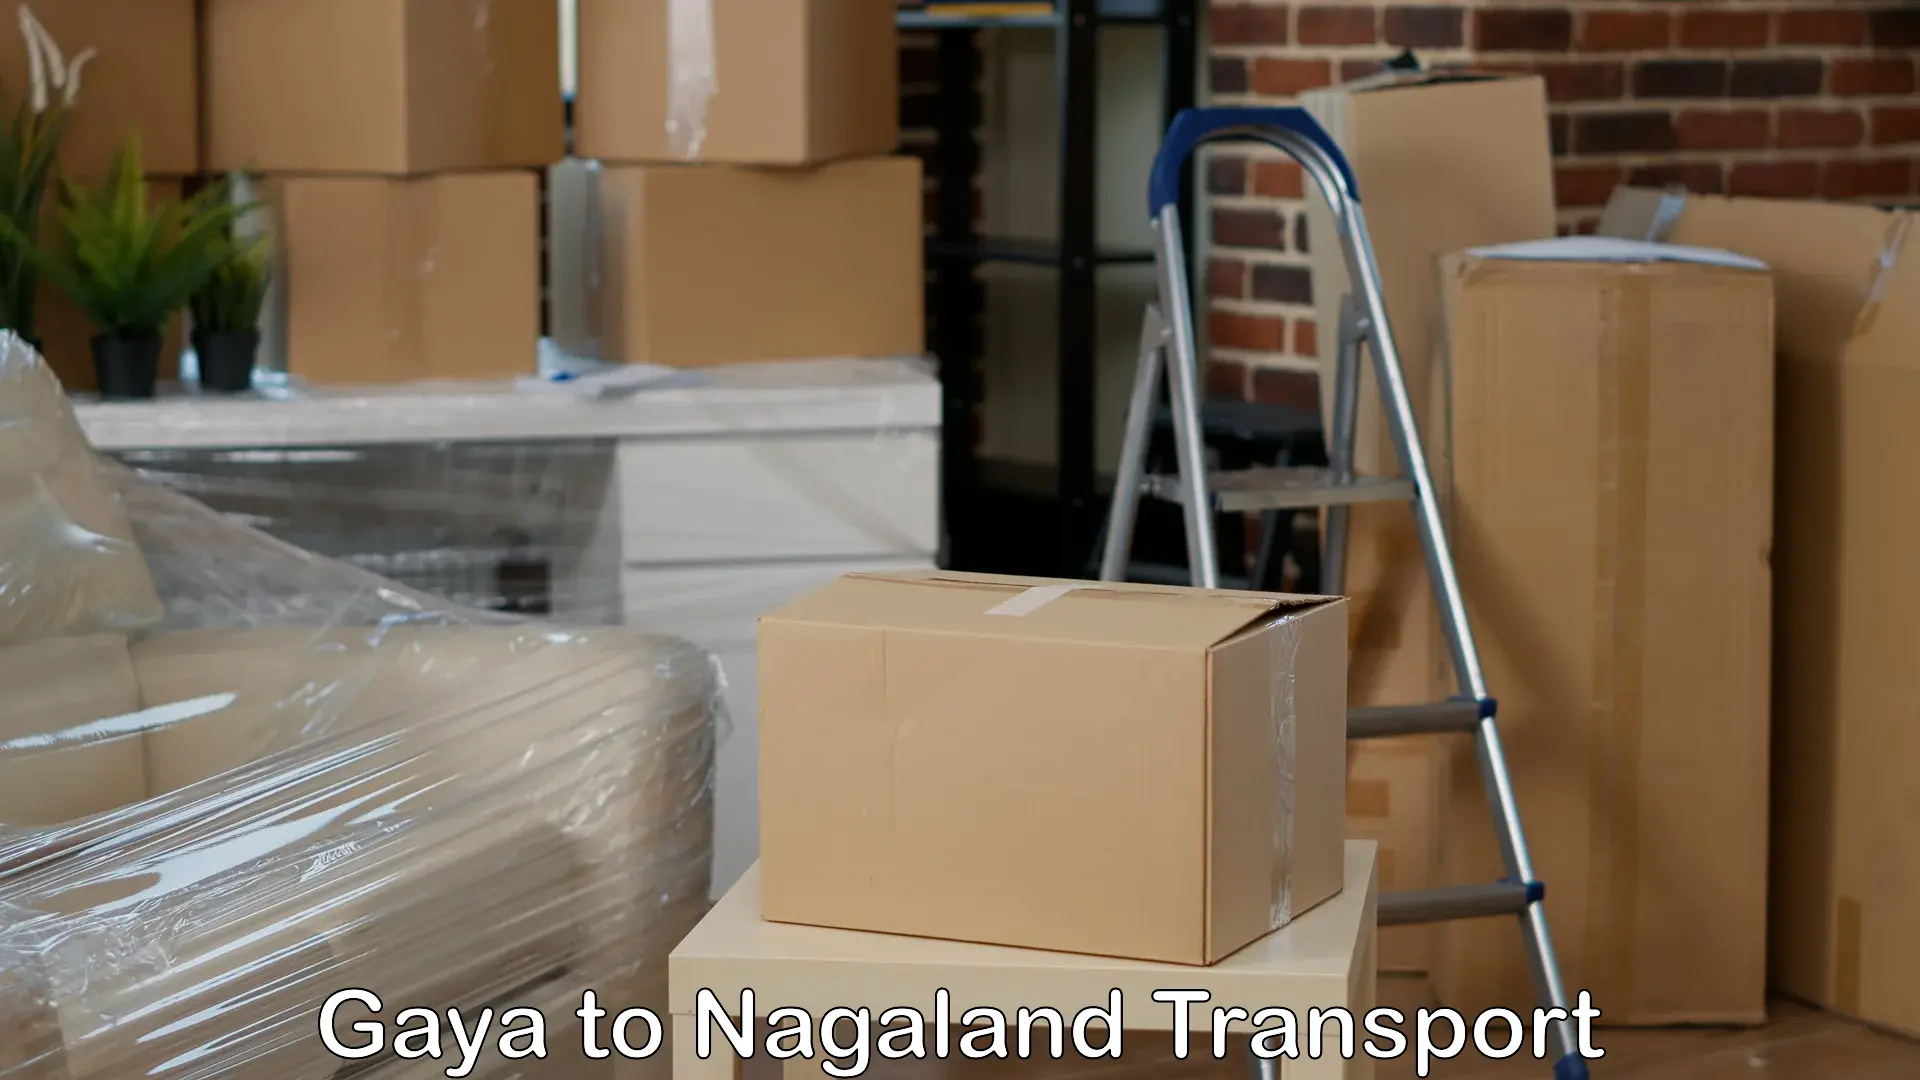 Cycle transportation service Gaya to NIT Nagaland